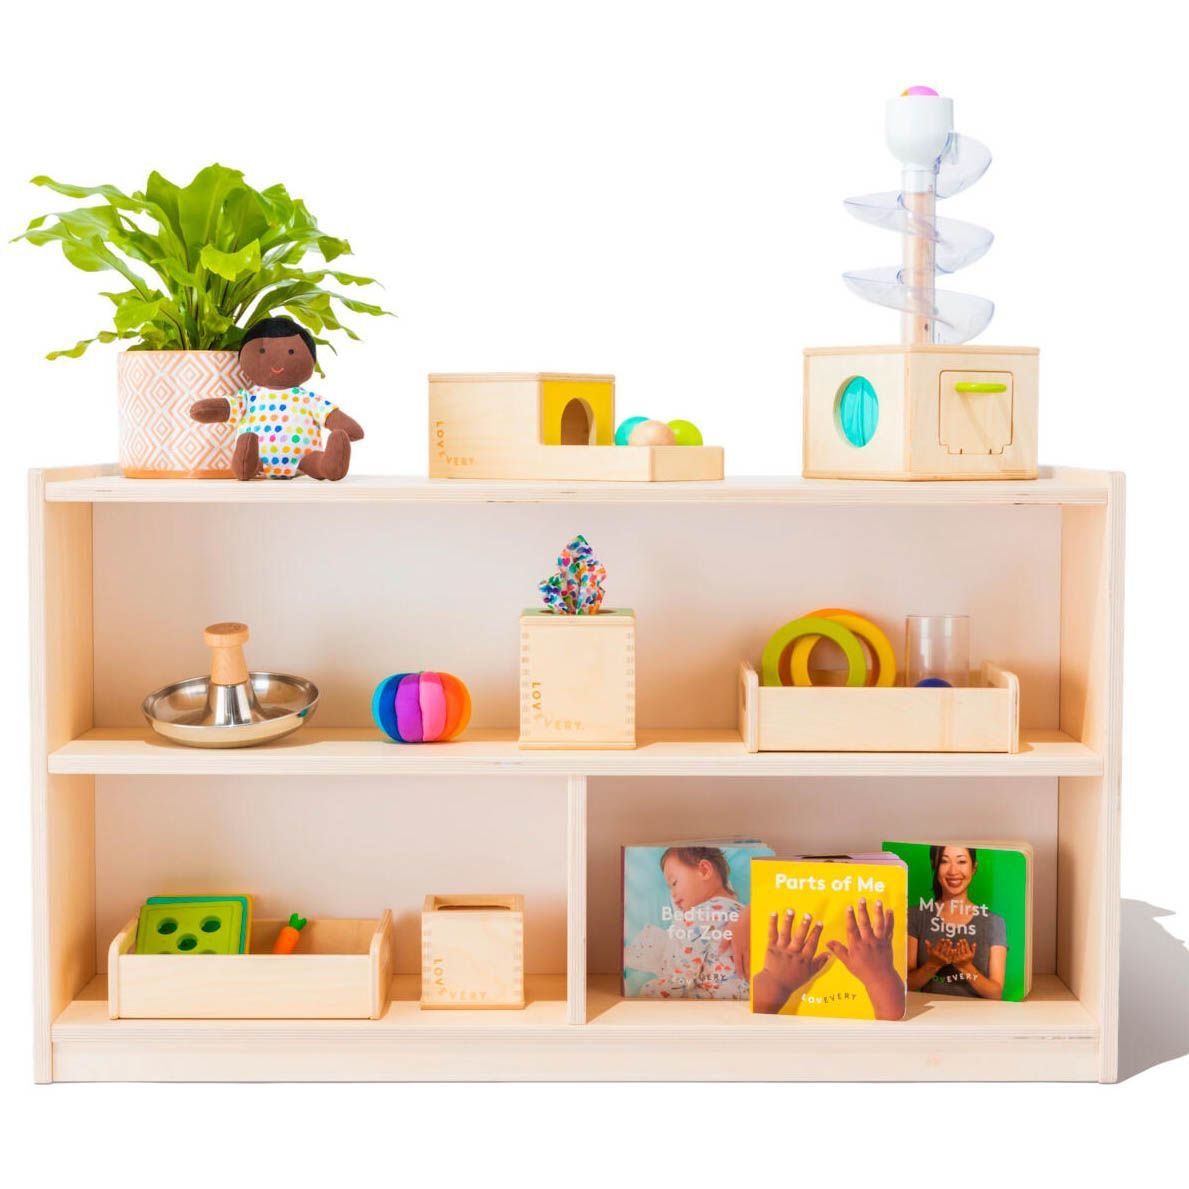 The Montessori Playshelf